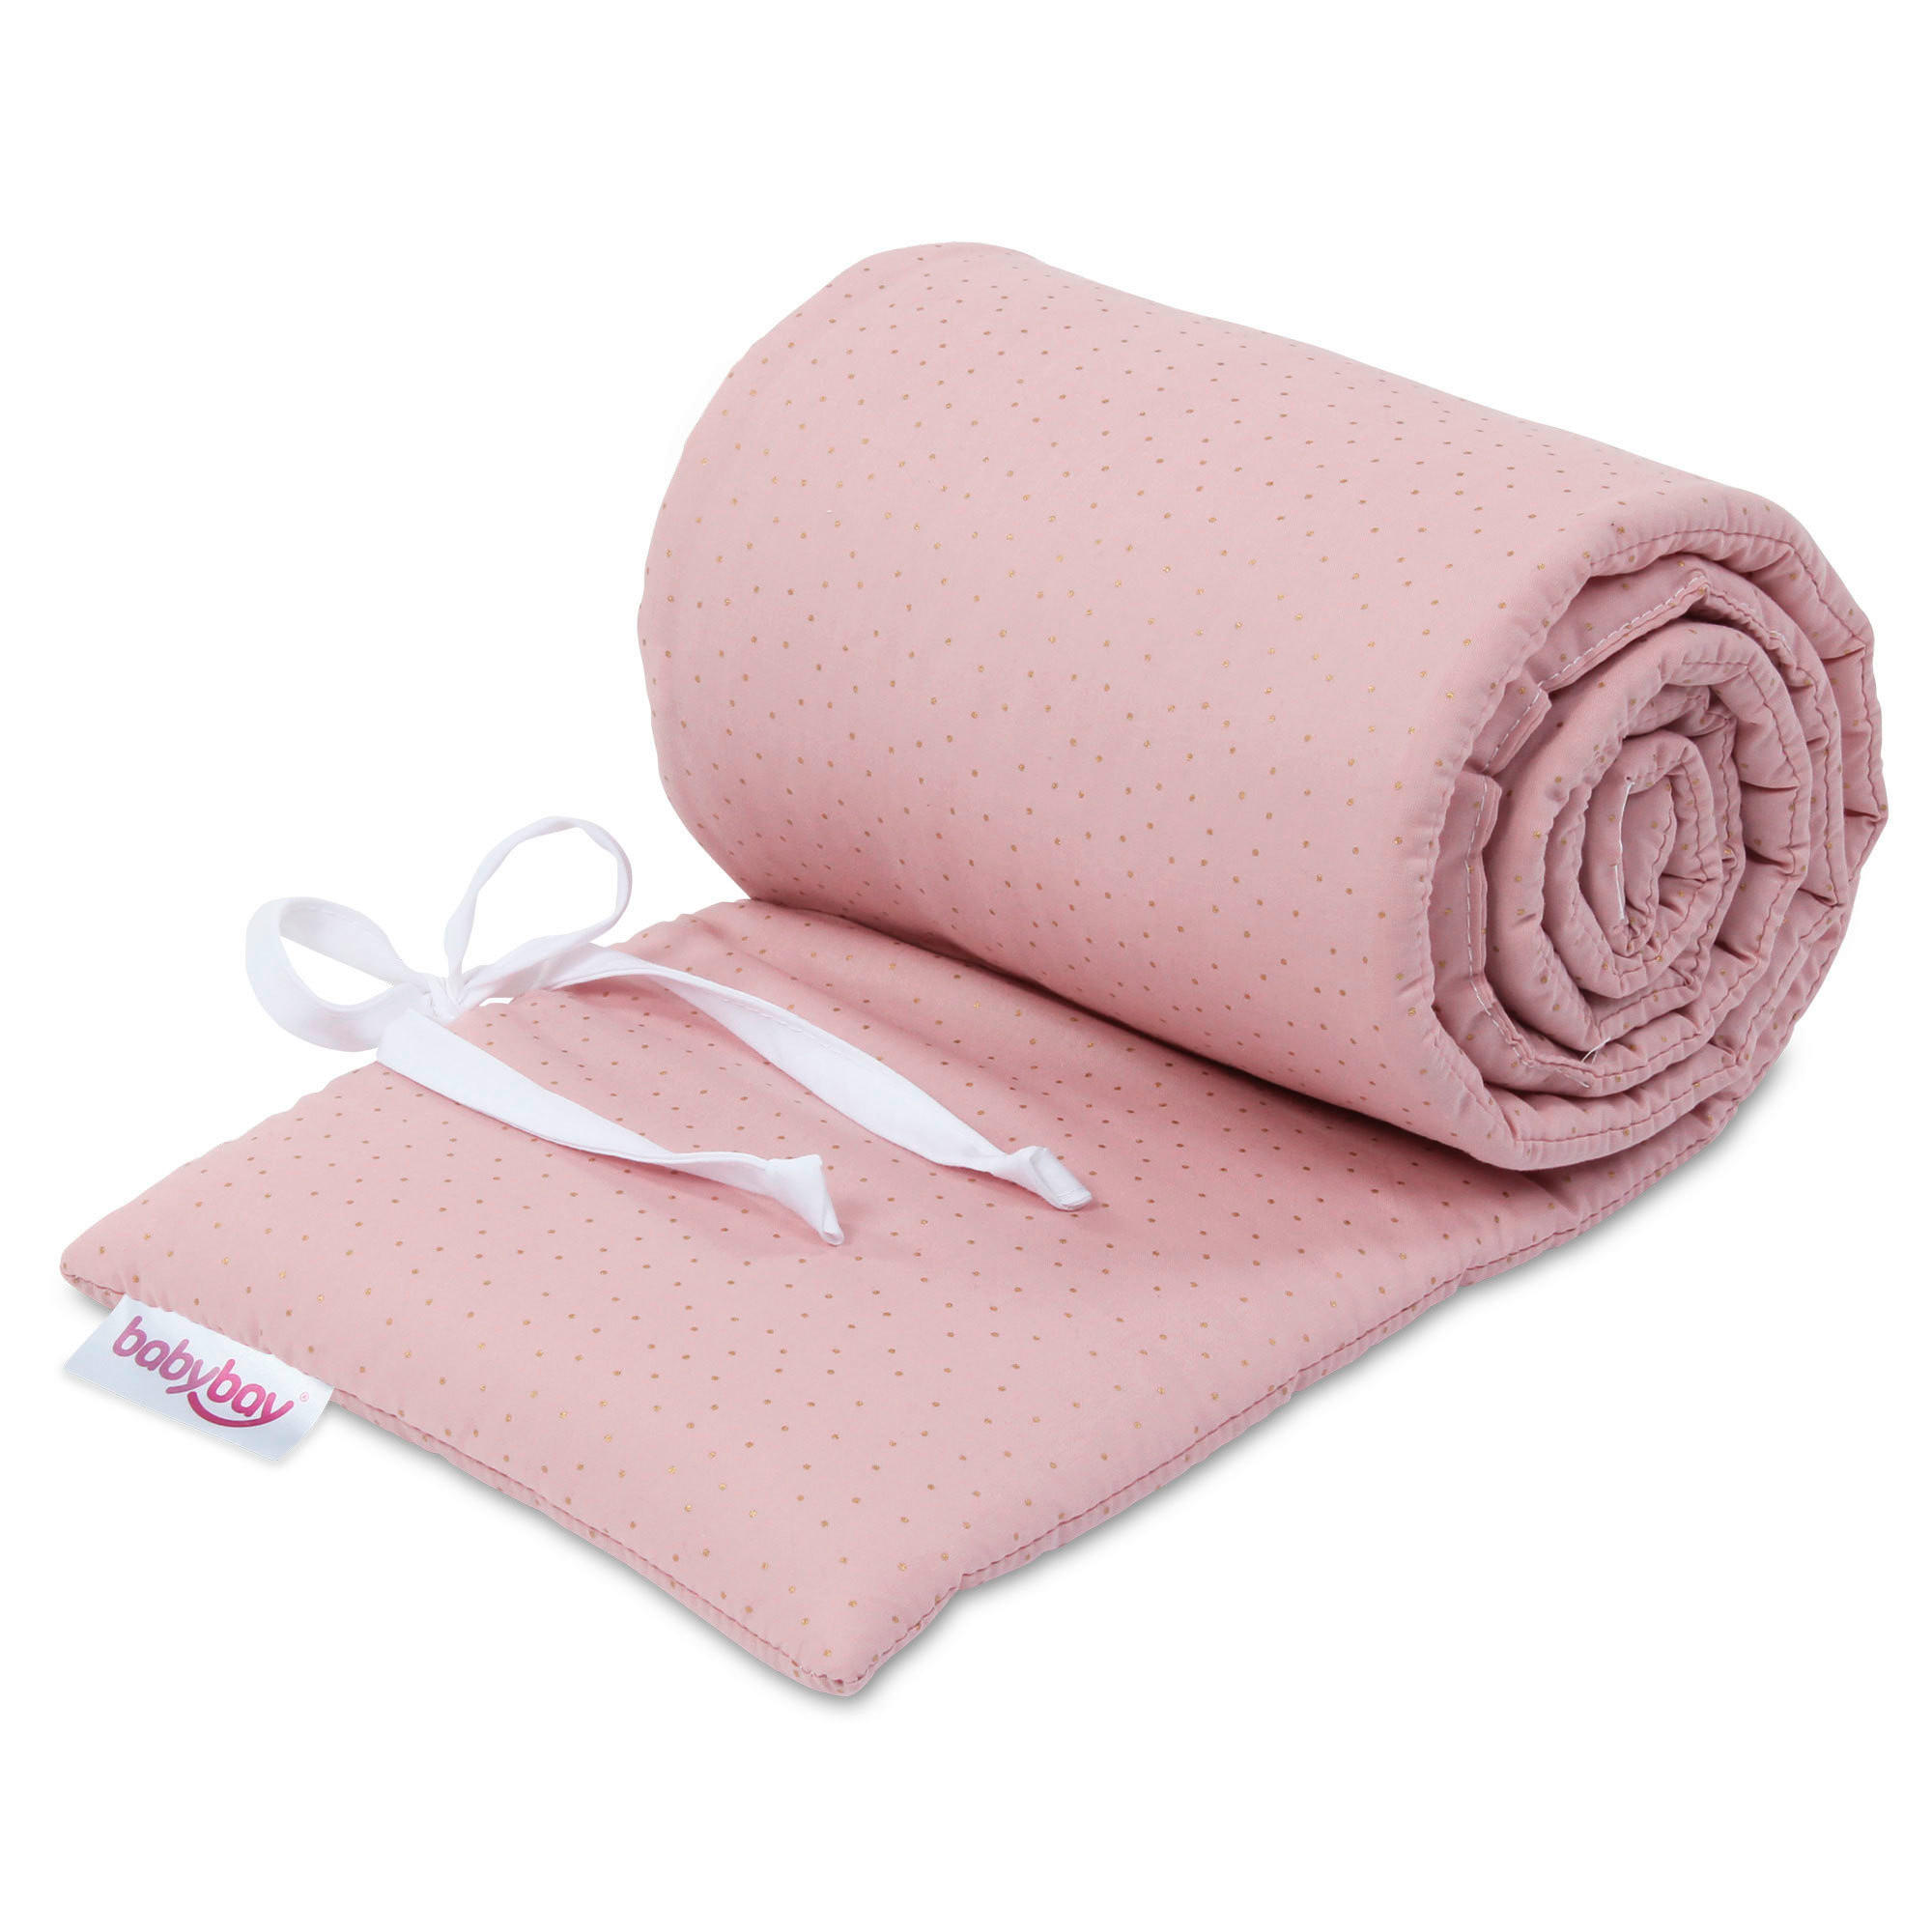 NESTCHEN BABYBAY  168/24/2 cm   - Rosa, Basics, Textil (168/24/2cm) - Babybay